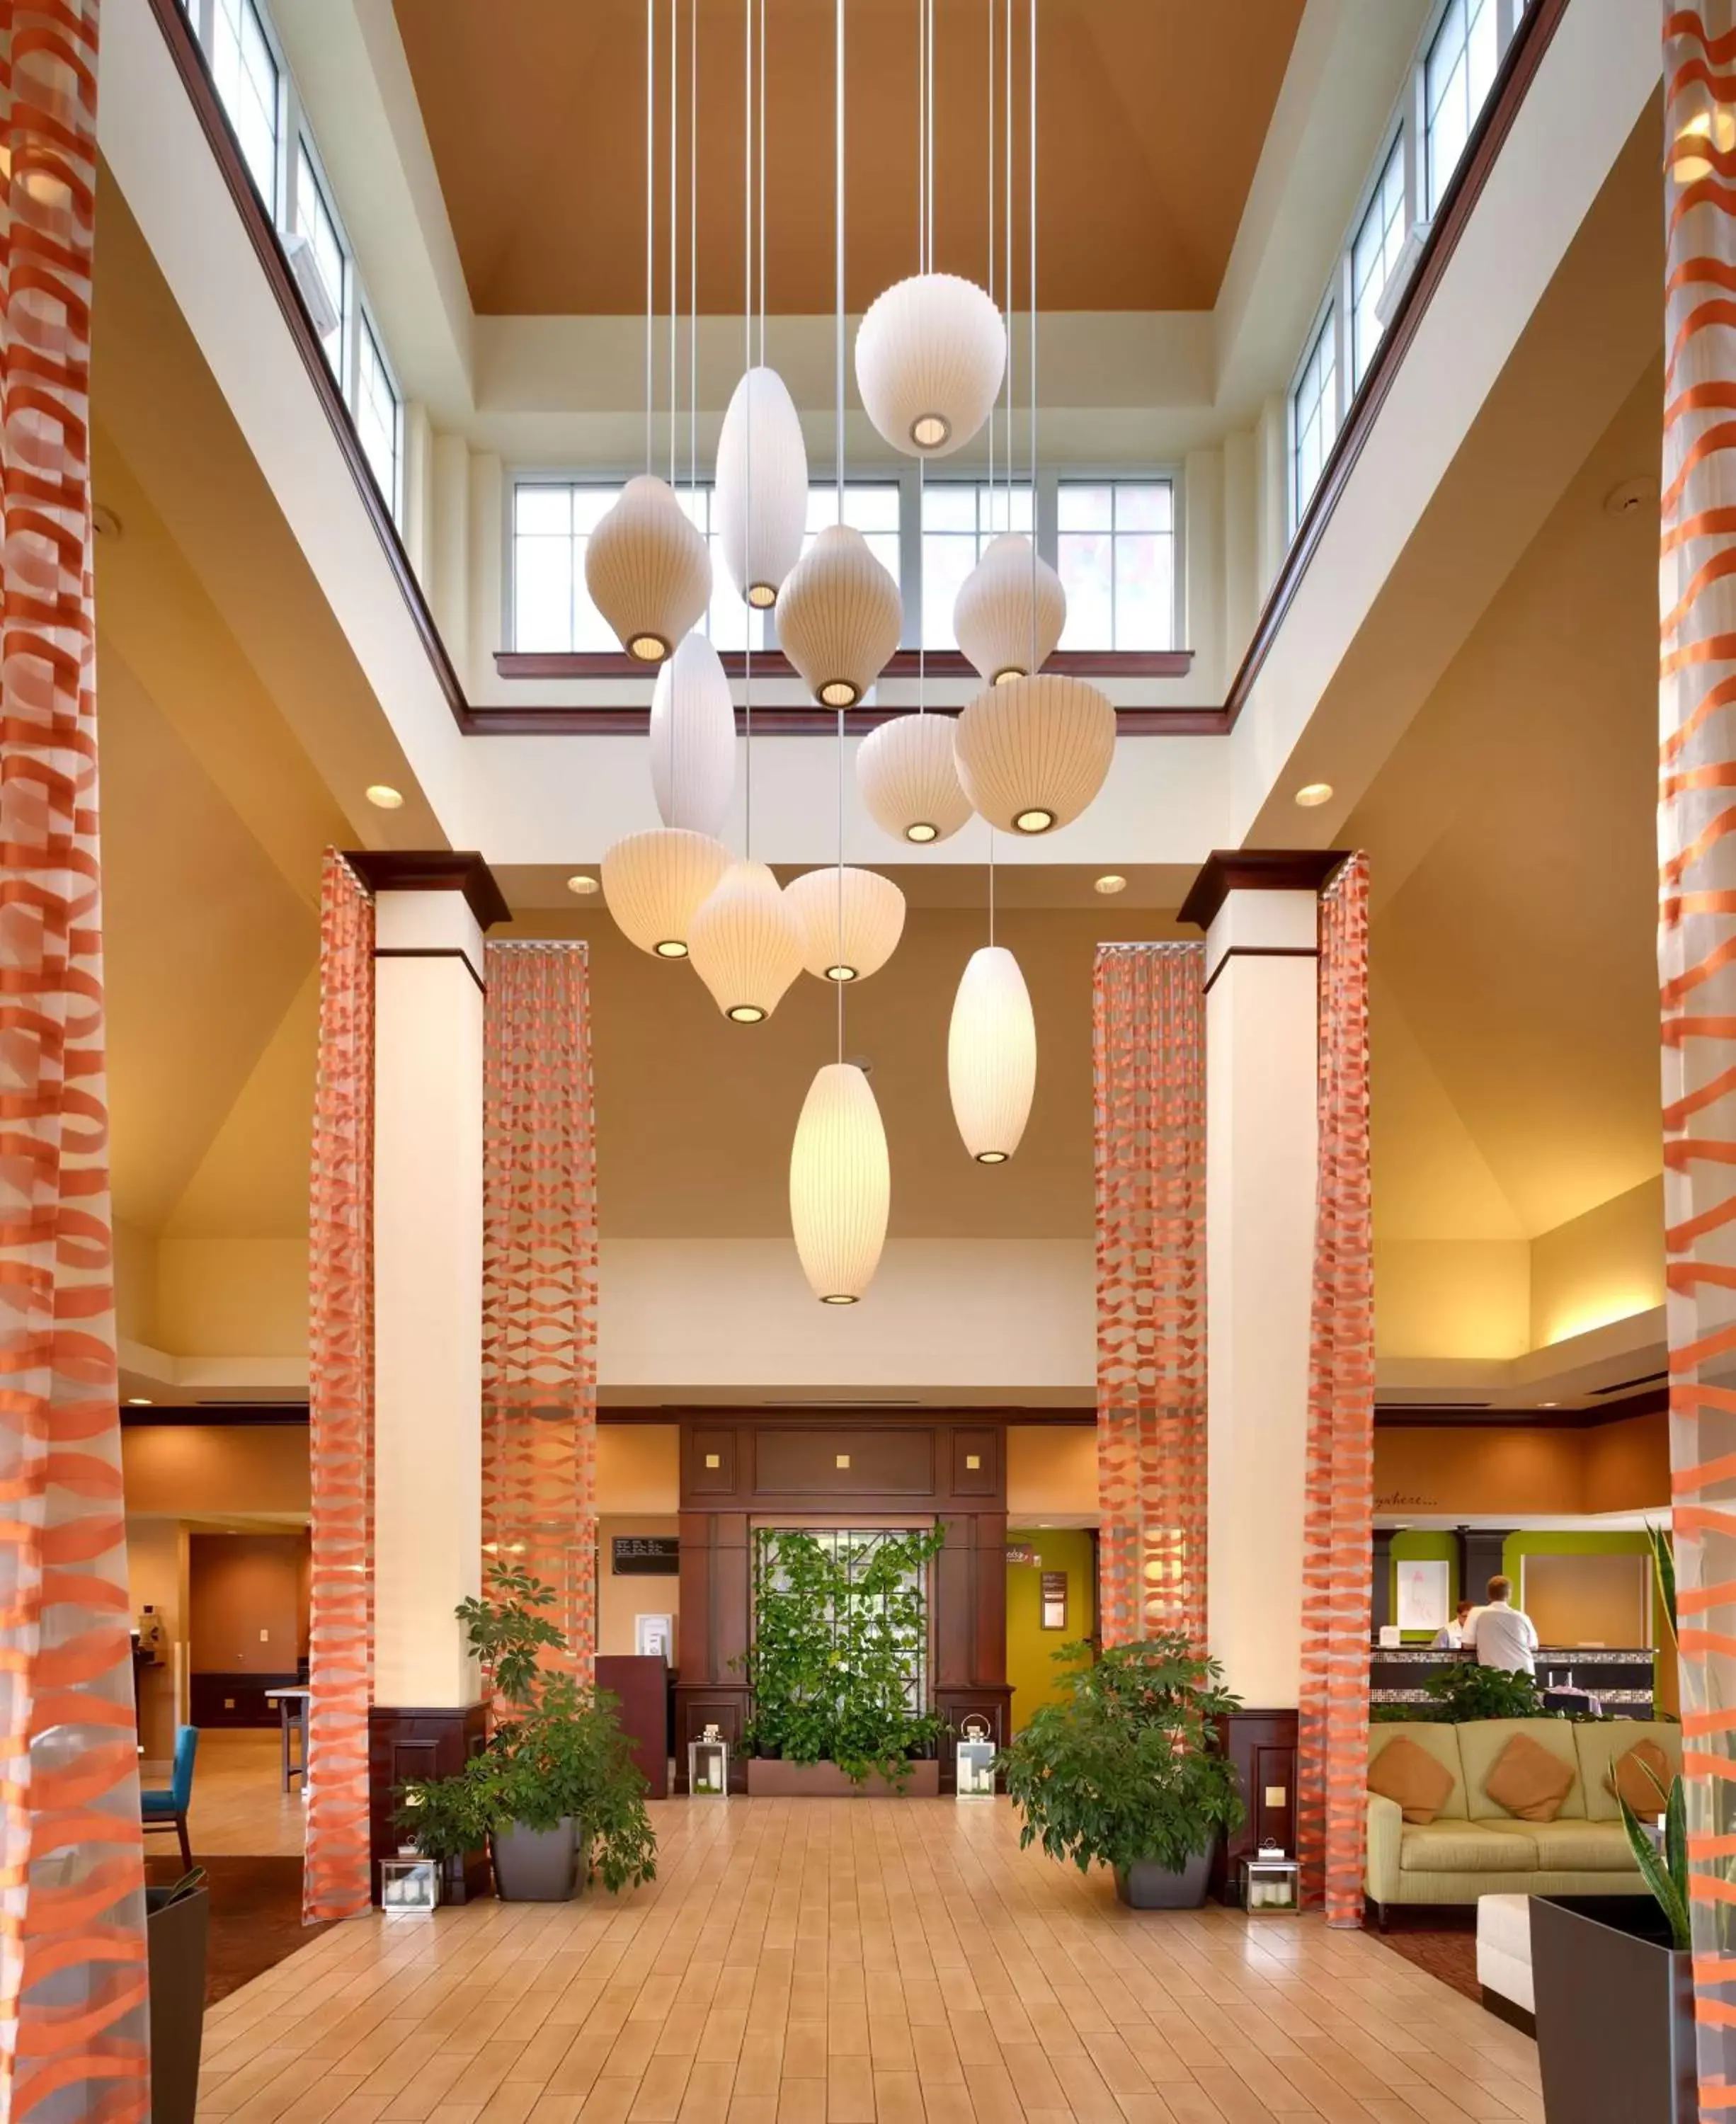 Lobby or reception, Lobby/Reception in Hilton Garden Inn Clarksville